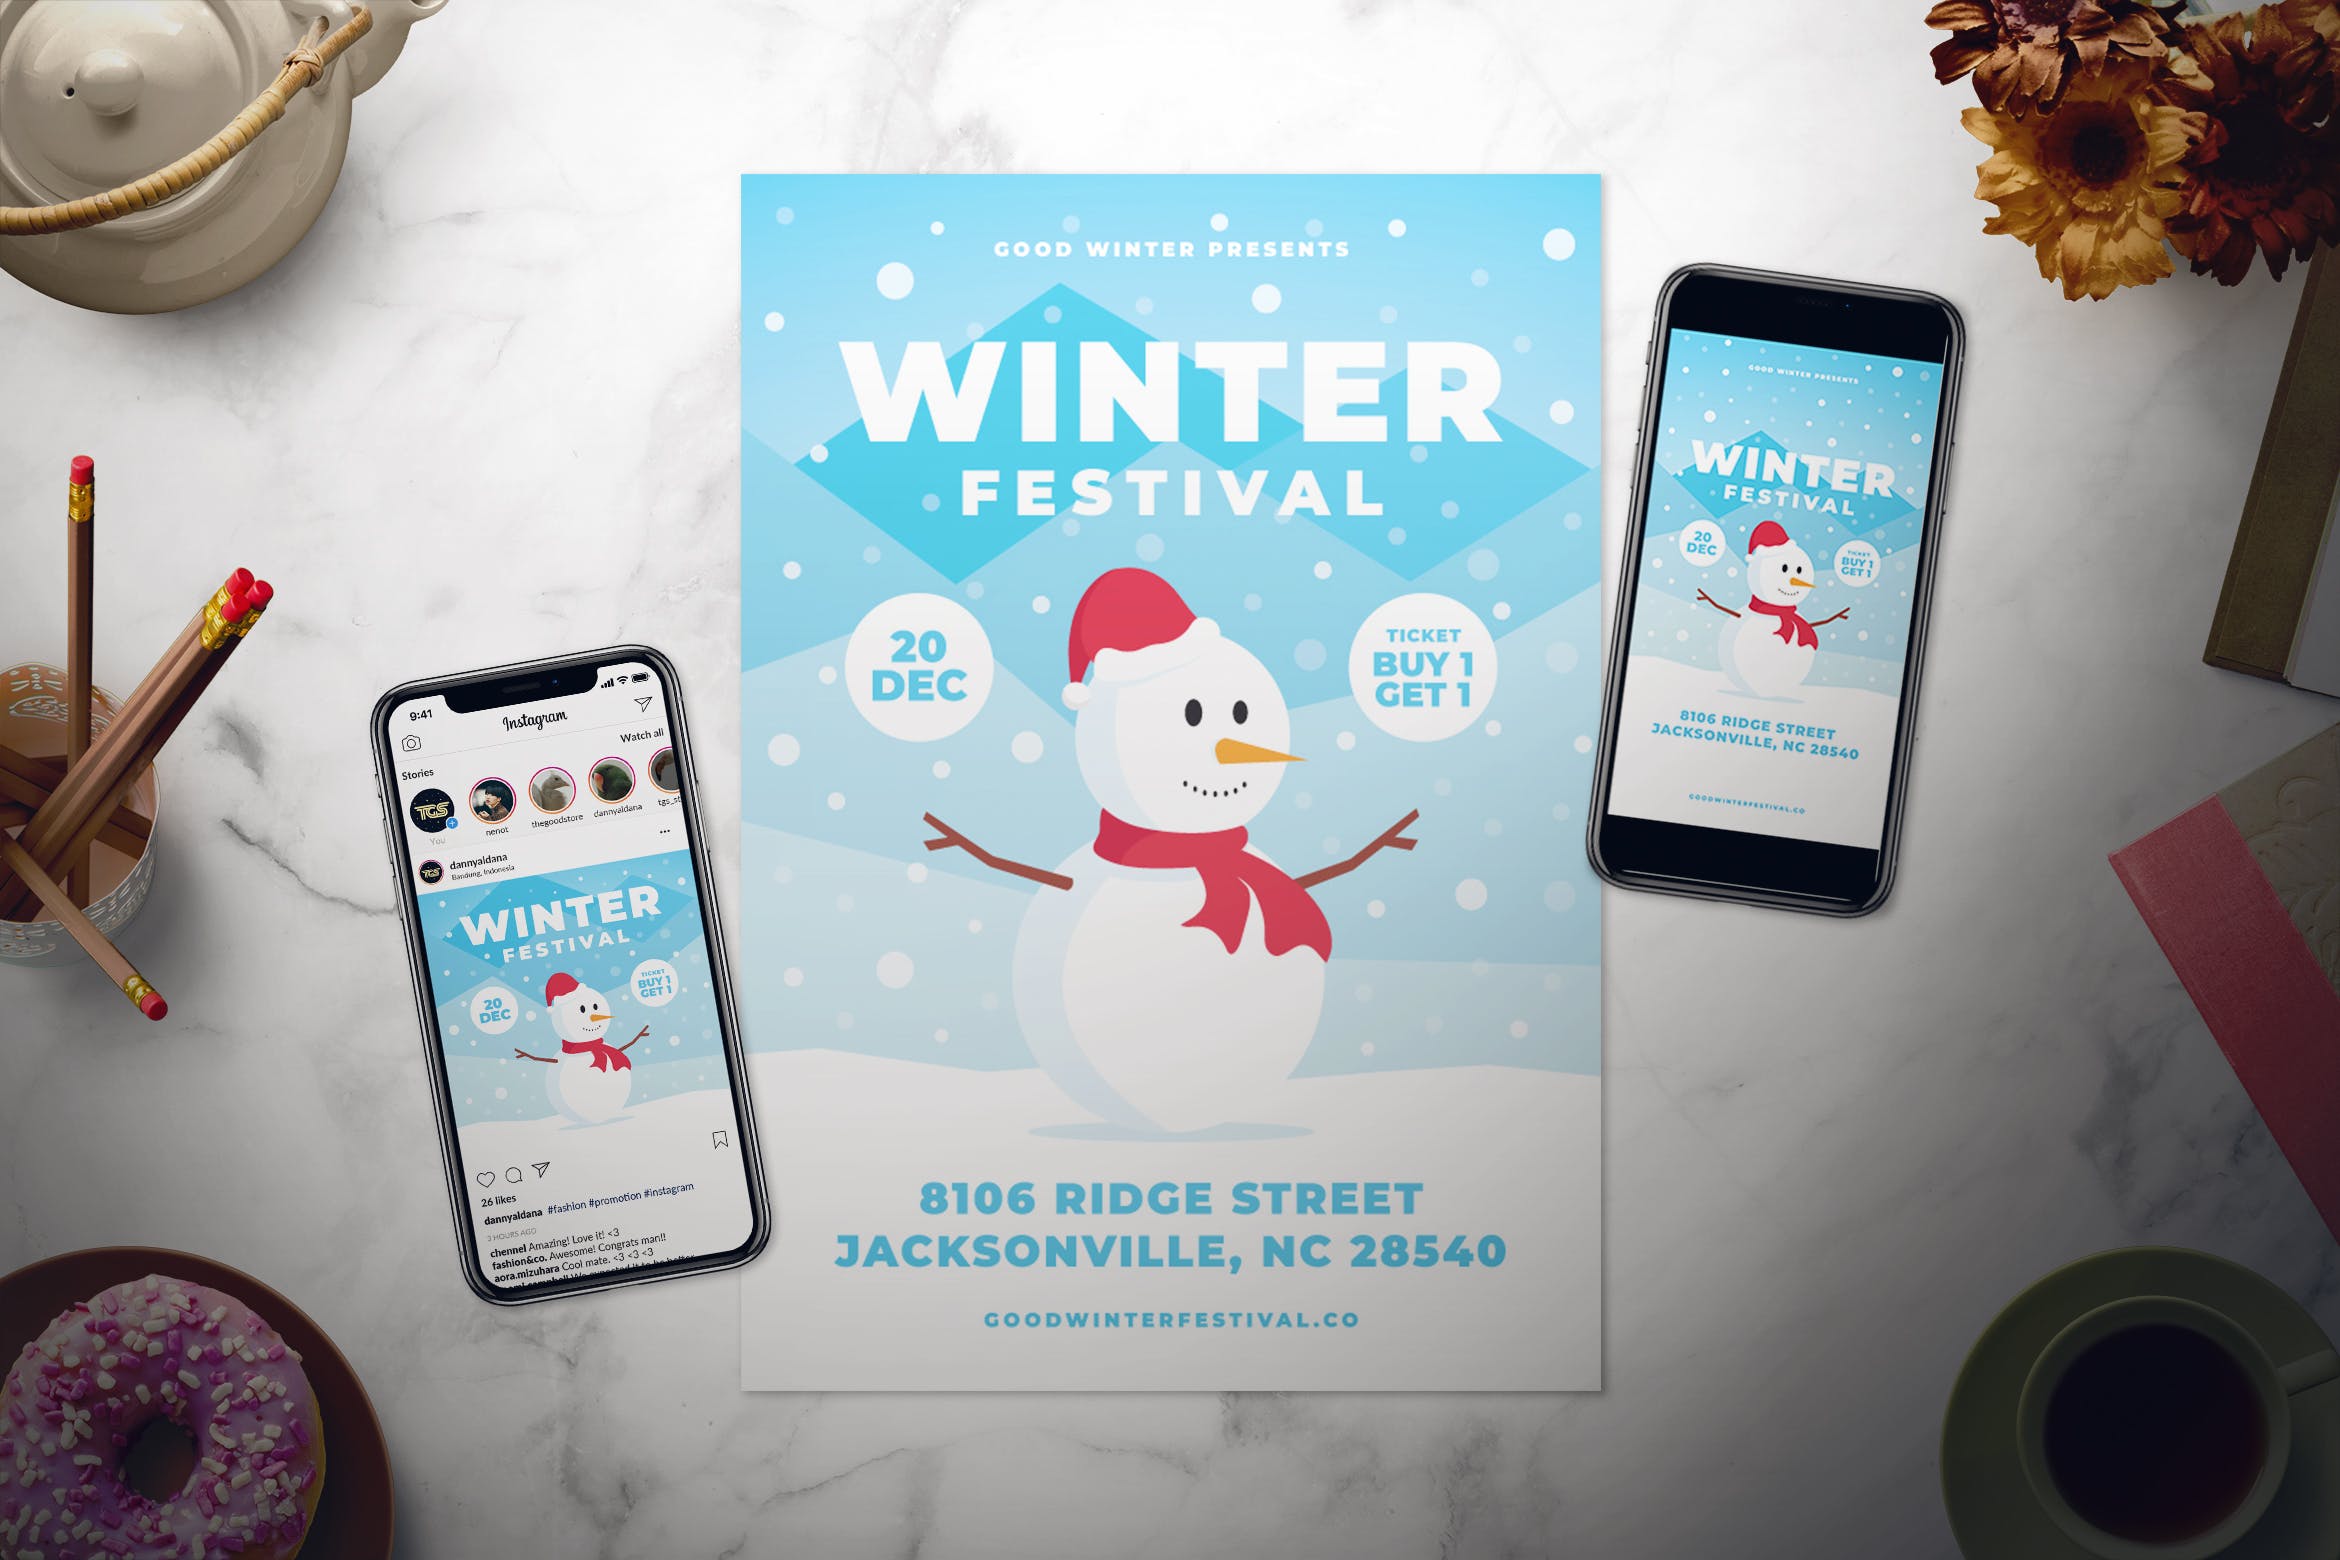 冬季节日活动邀请海报传单设计模板 Winter Festival Flyer Set插图